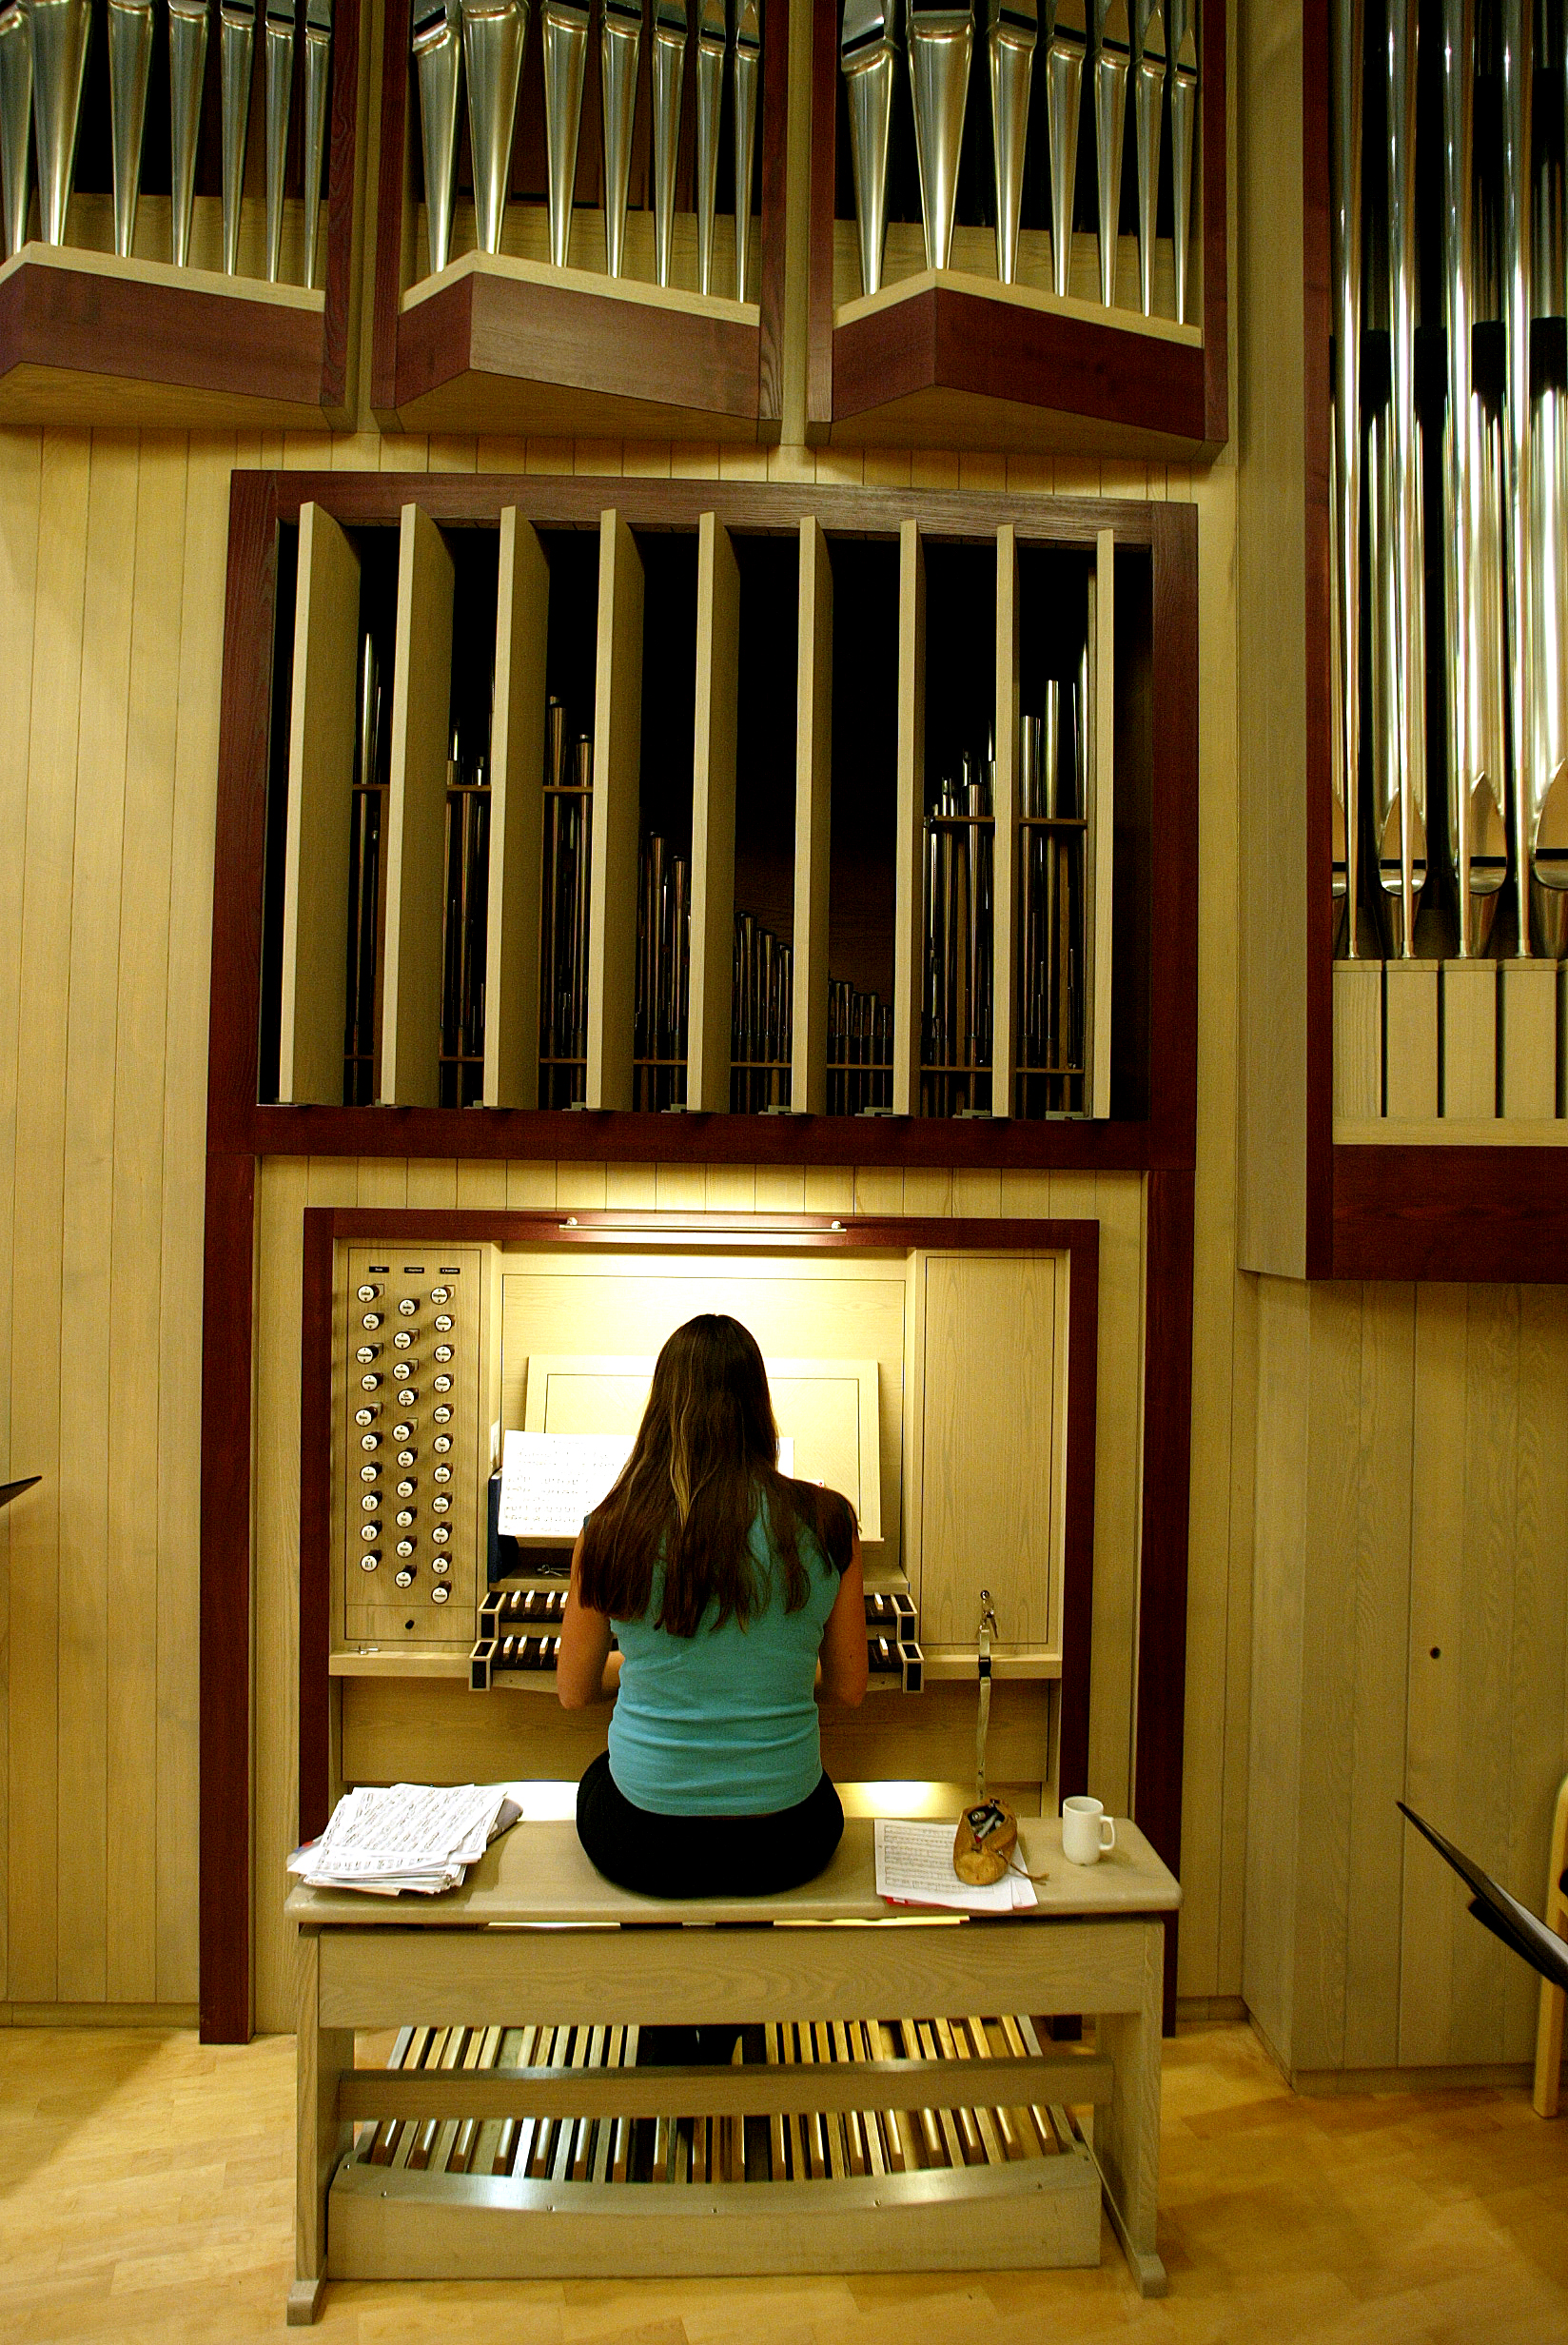 Bilde av student som spiller orgel